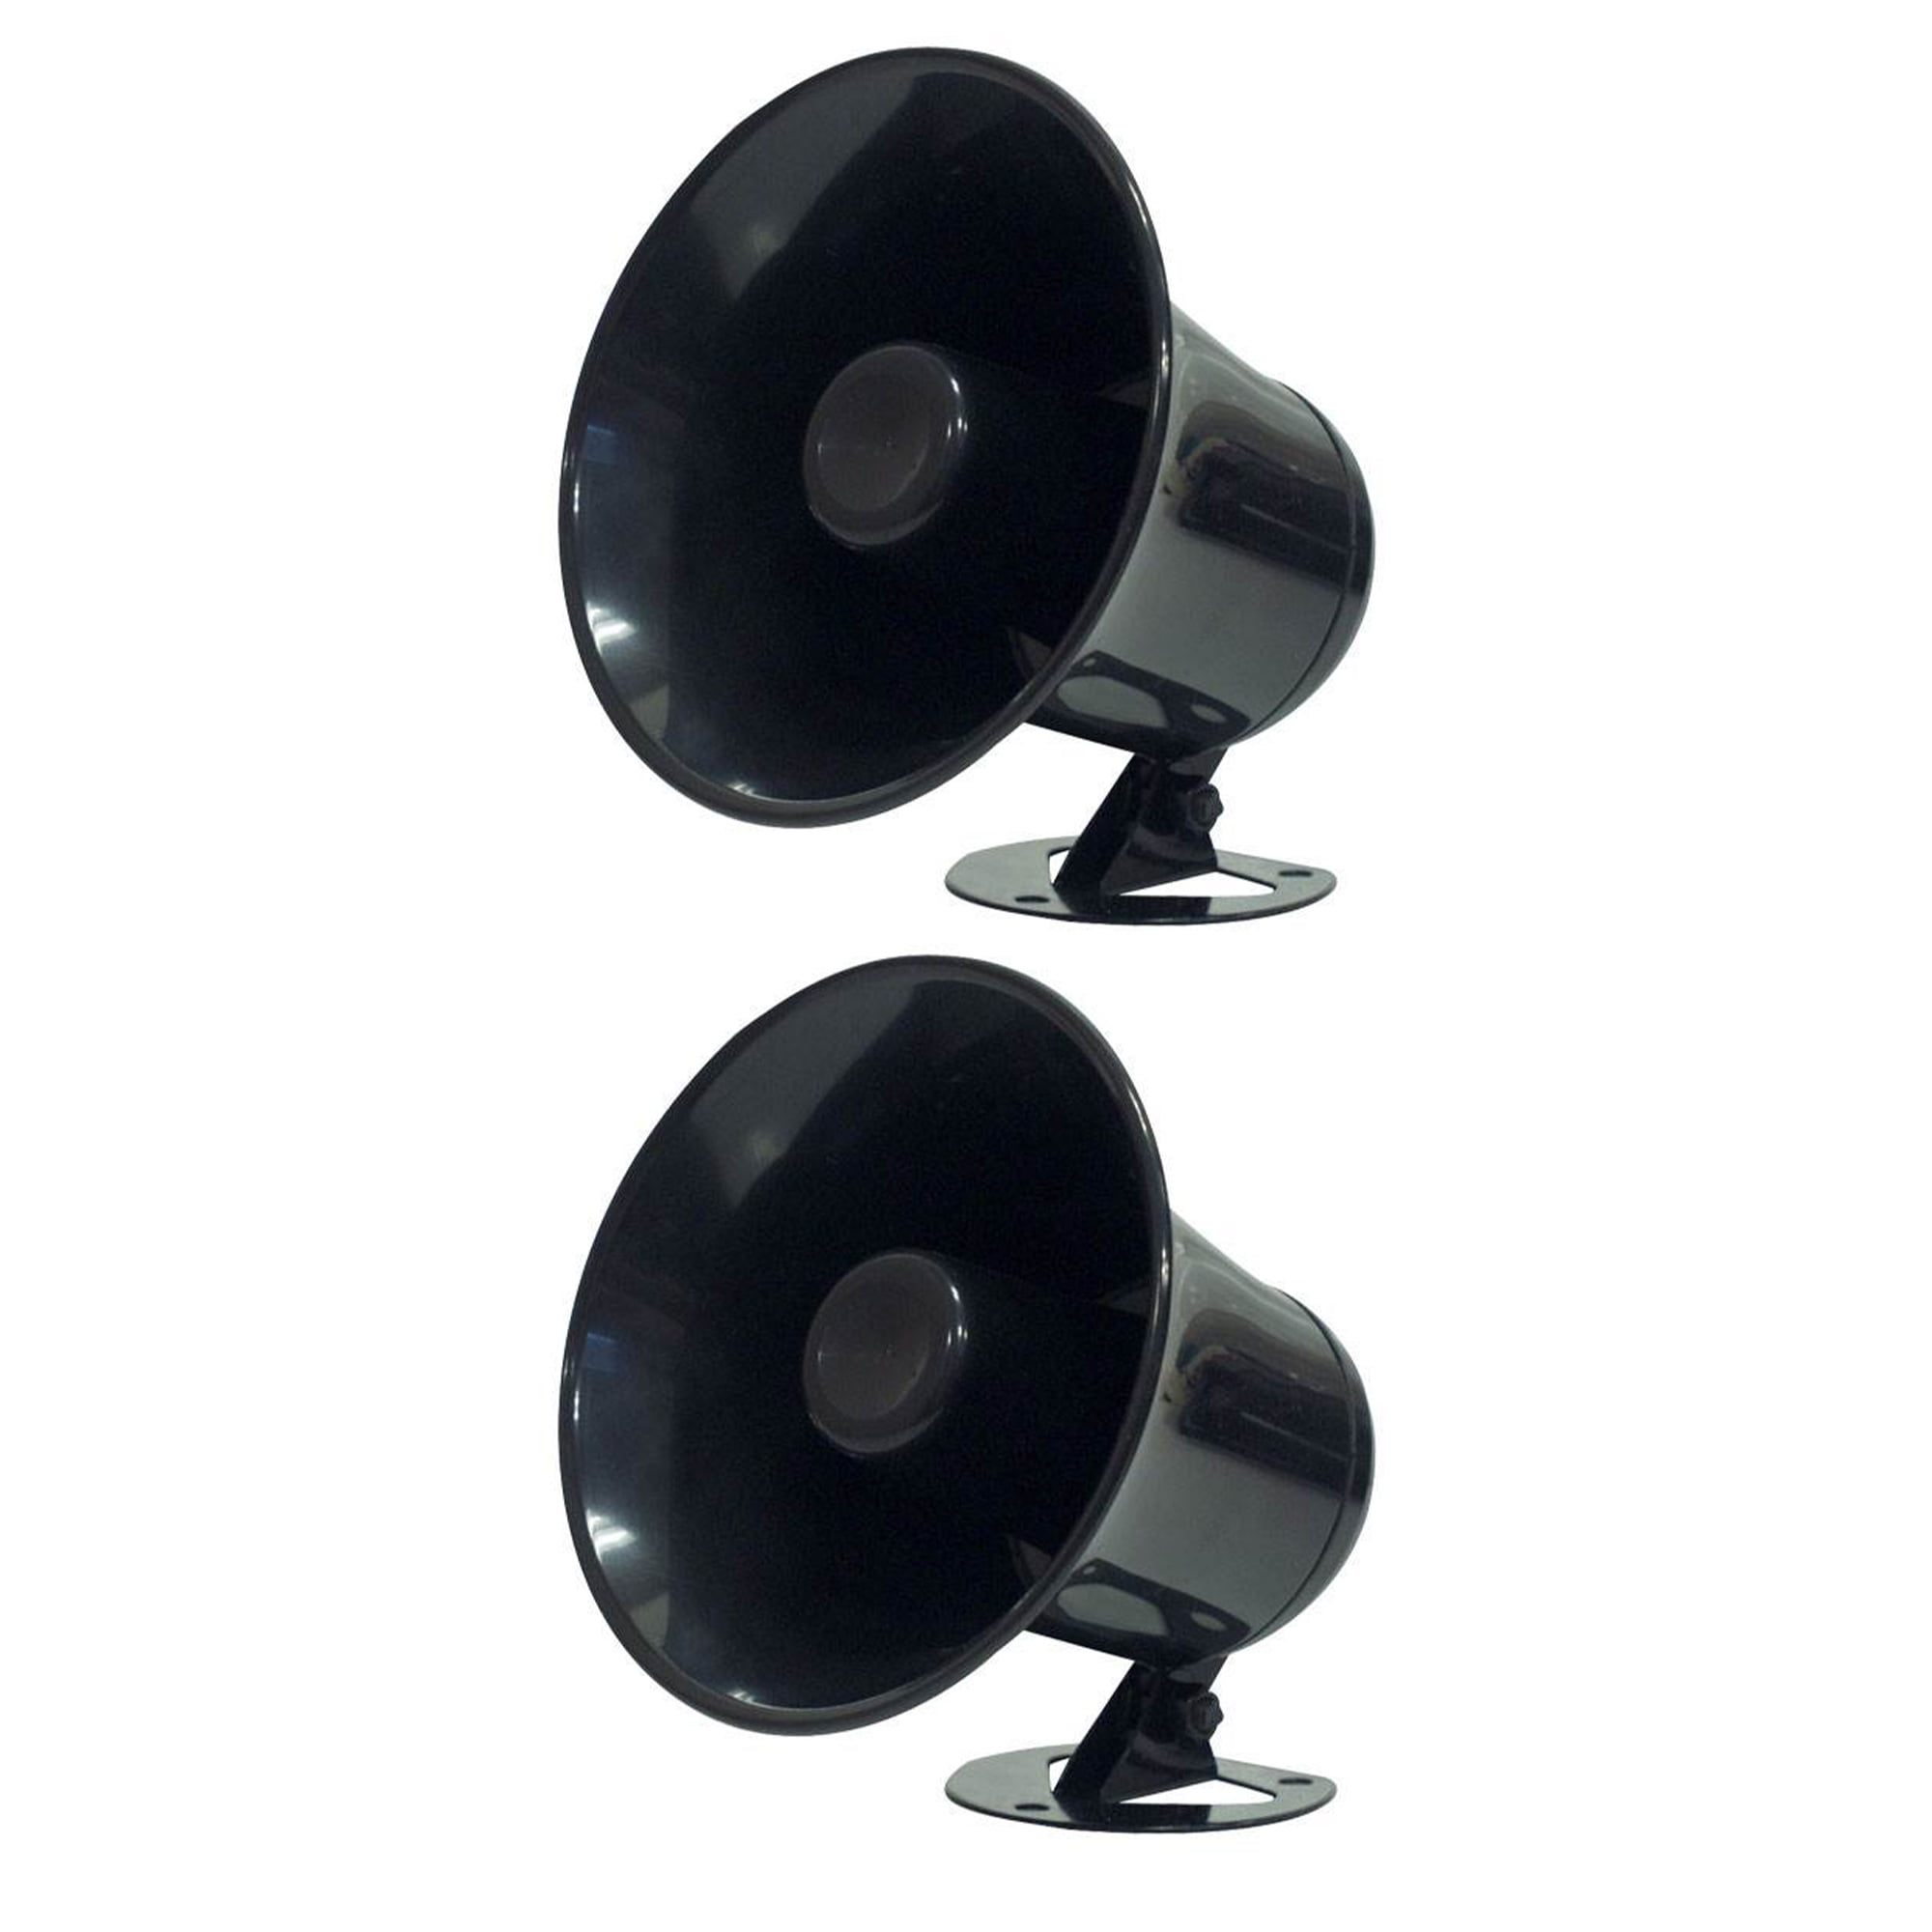 Pyle PSP8 5" Reflex Round Speaker Horn 